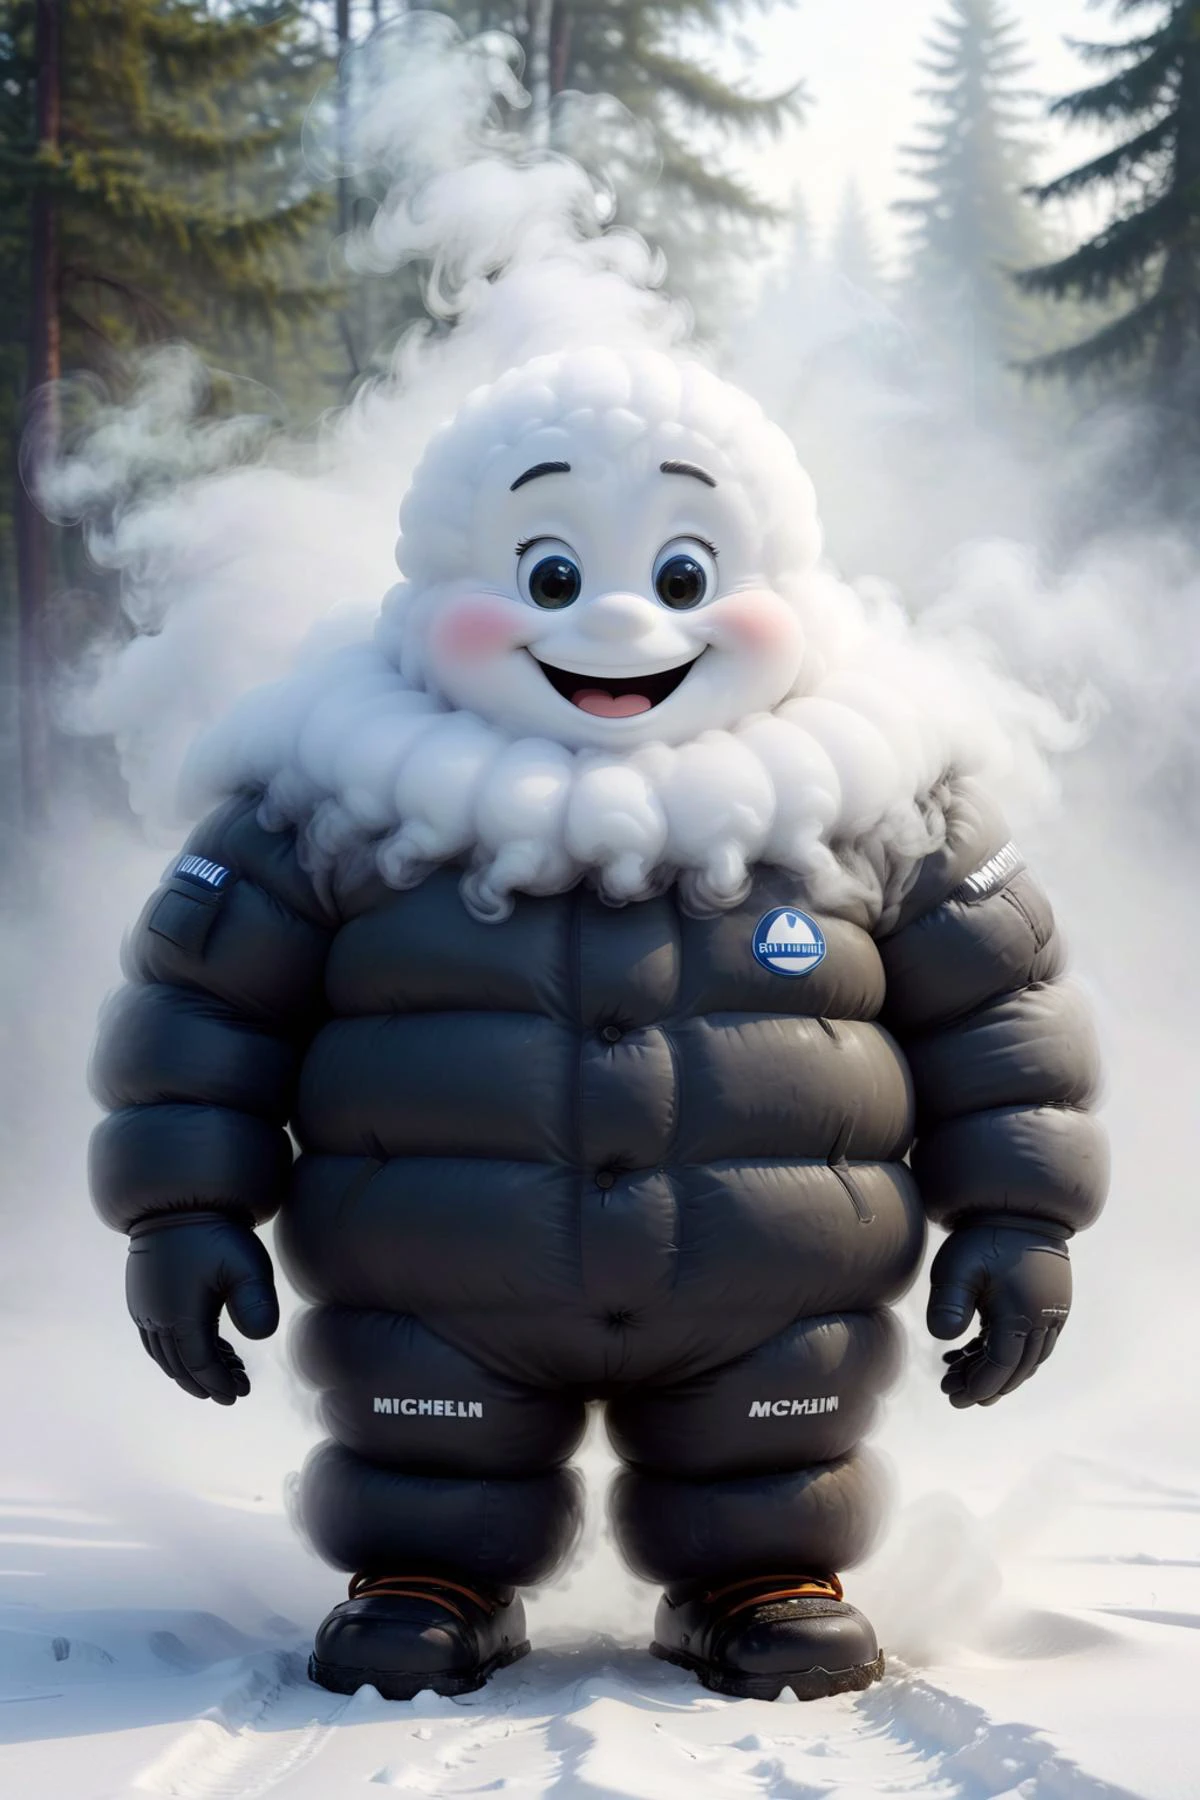 cute Michelin made of 霧, 雪 land, 雪, 雪ing, スキー,
メッセージ, 霧, 煙,